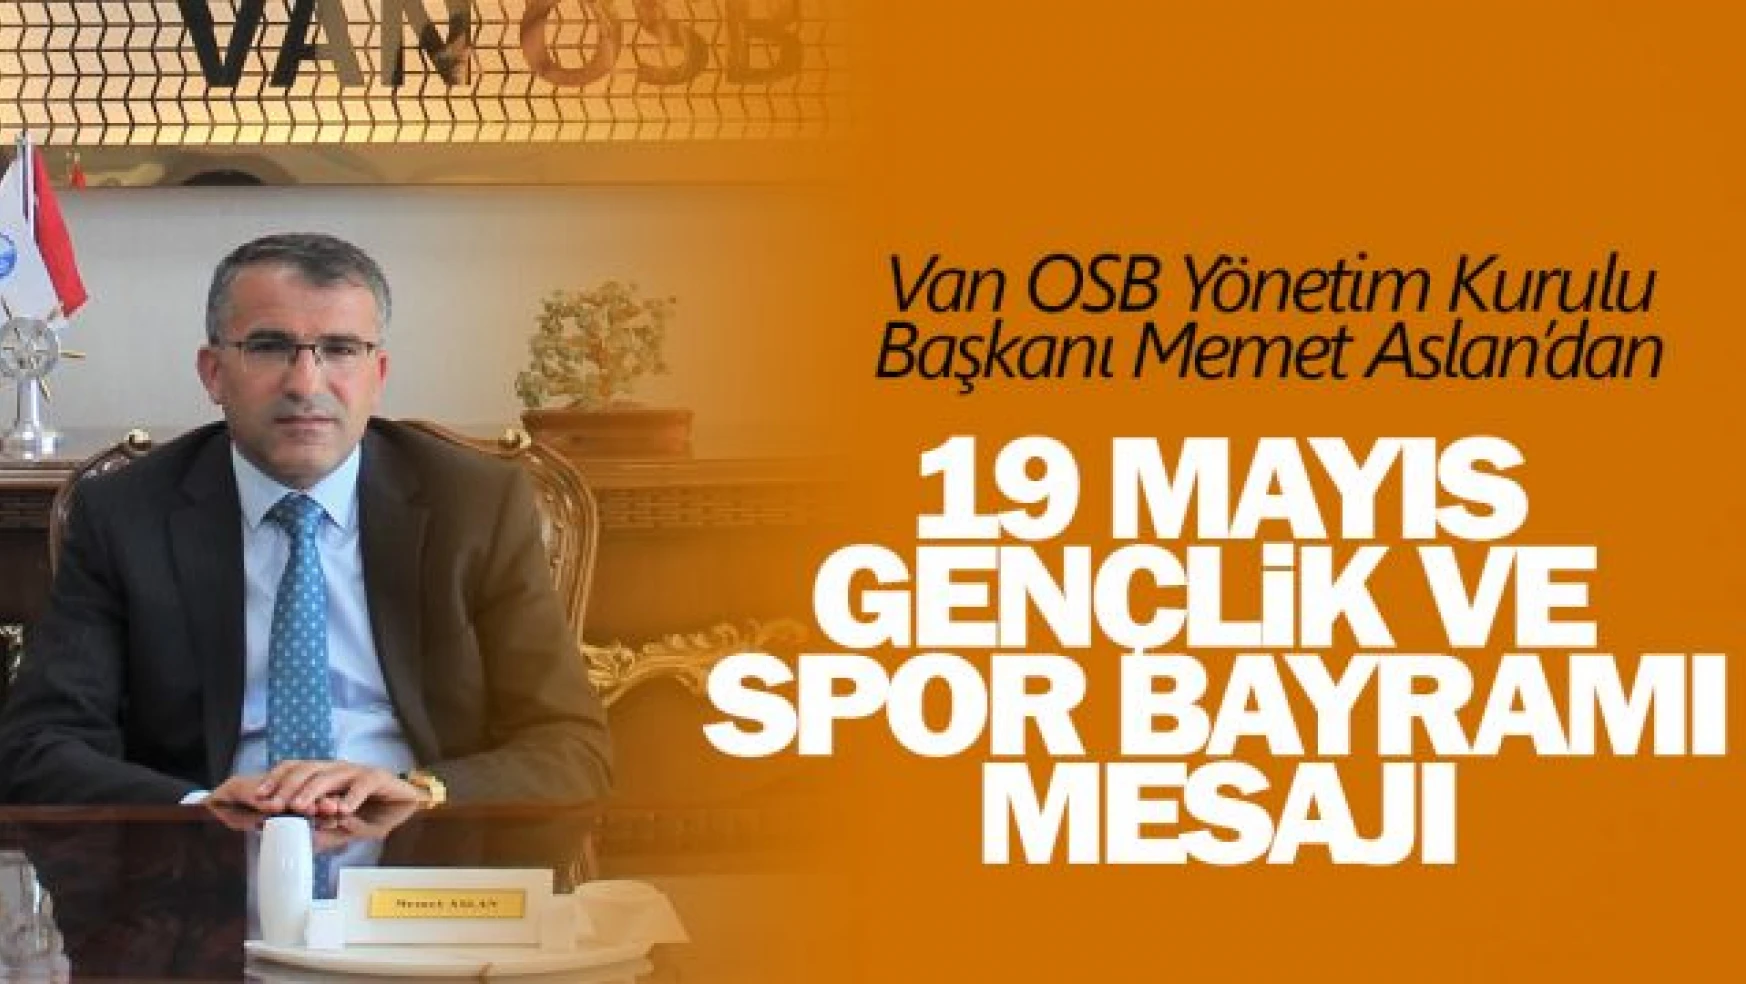 Van OSB Yönetim Kurulu Başkanı Memet Aslan, 19 Mayıs Gençlik ve Spor Bayramını kutladı